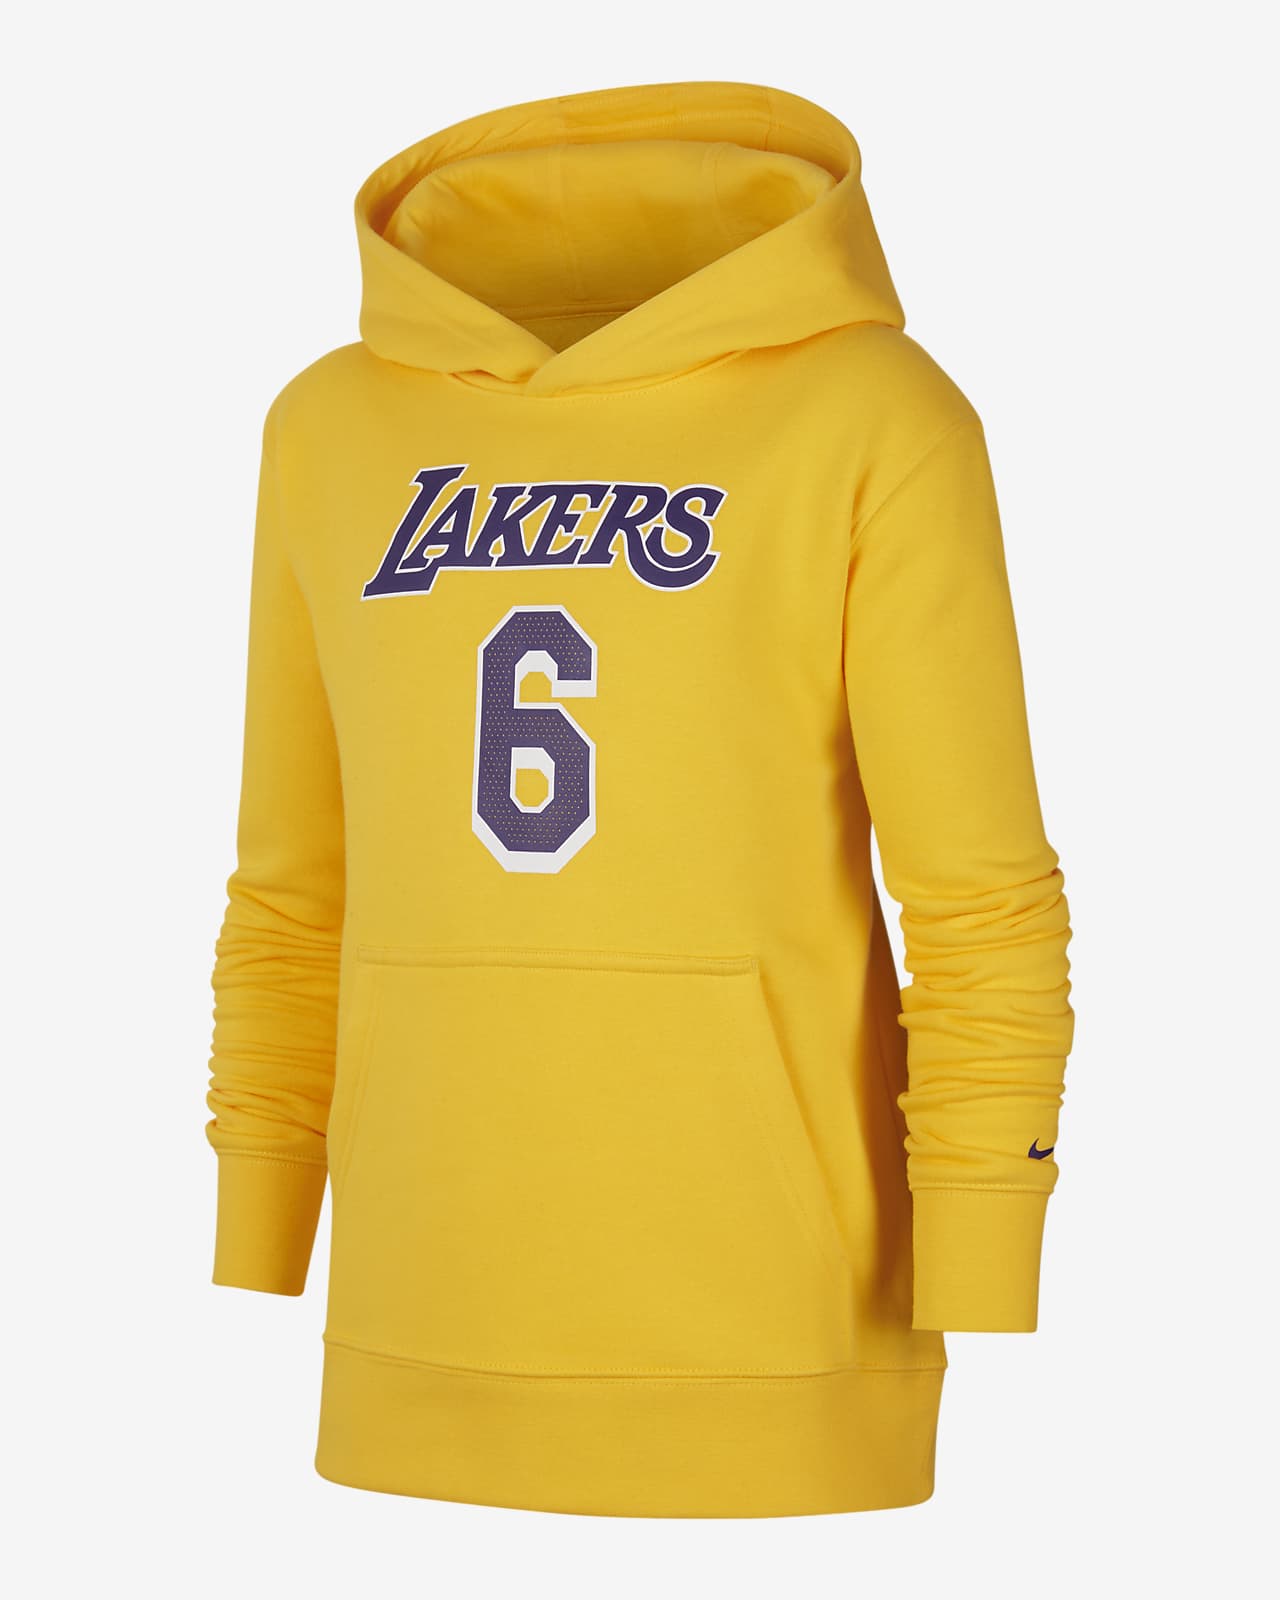 Flísová mikina Nike NBA Los Angeles Lakers s kapucí pro větší děti 